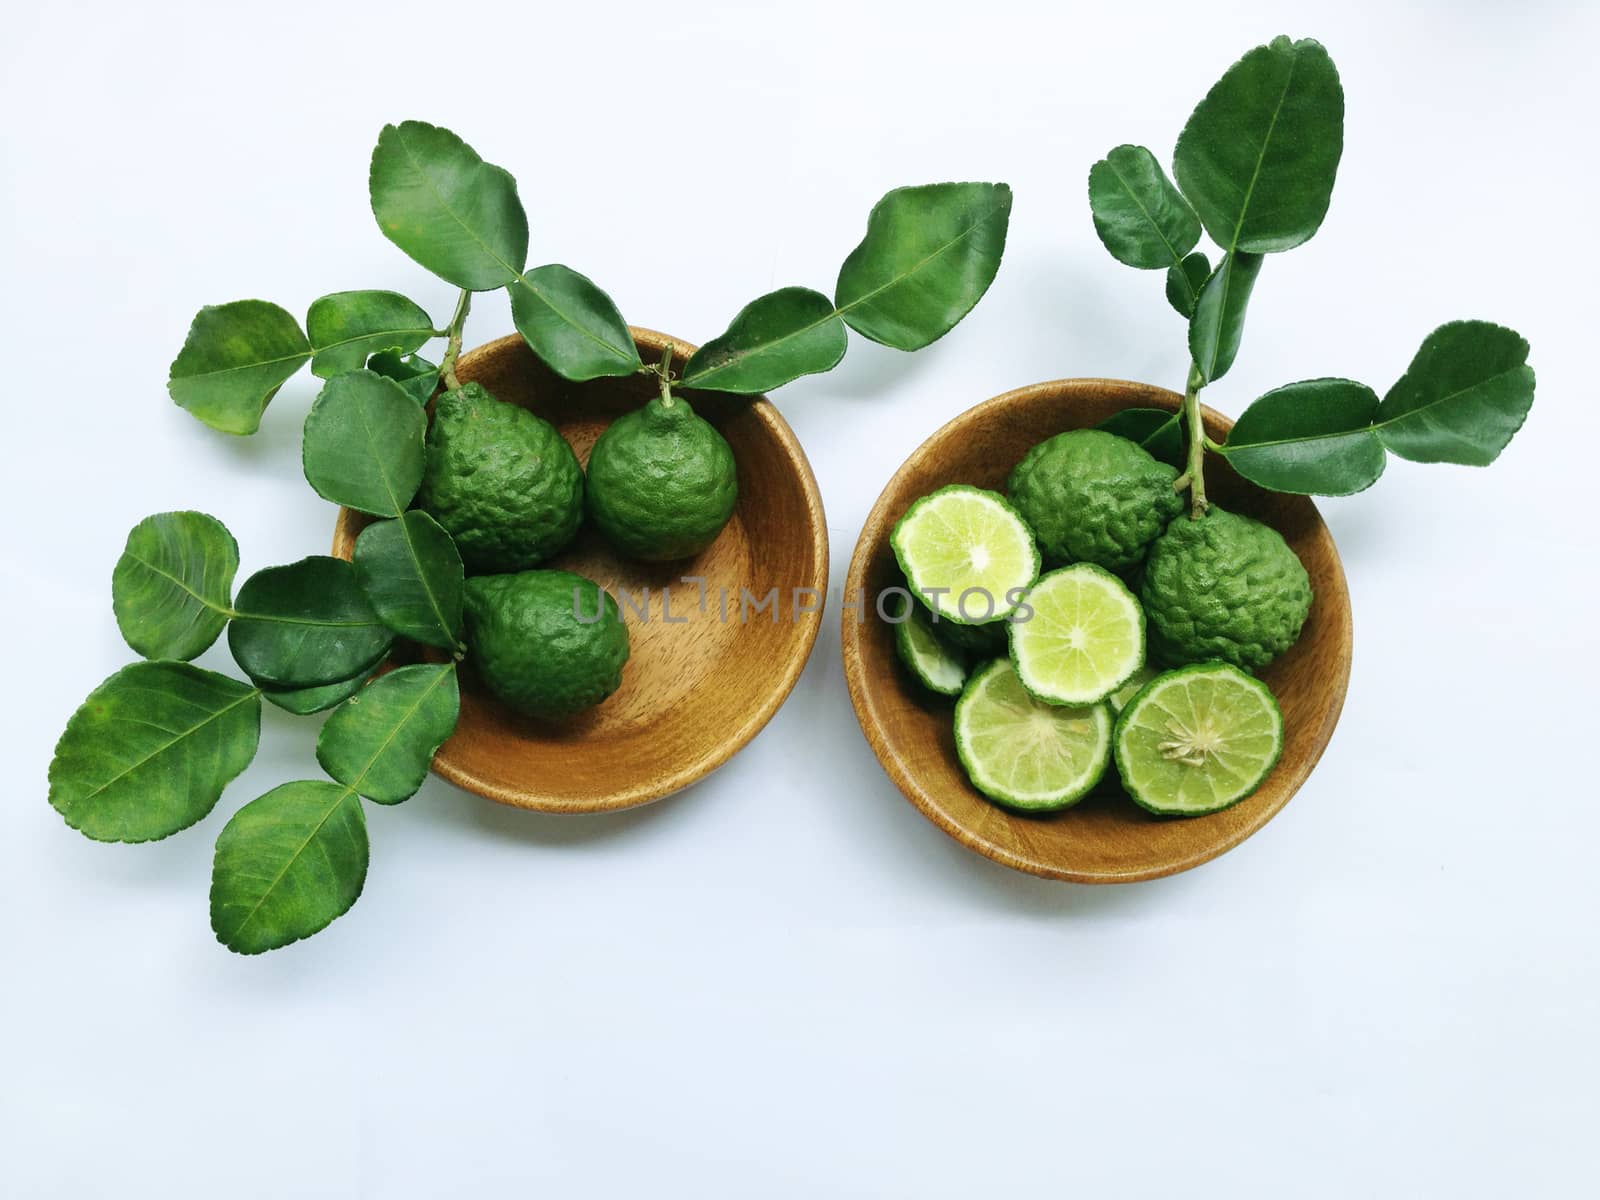 Kaffir Lime or Bergamot in wooden bowl on white background  by Bowonpat